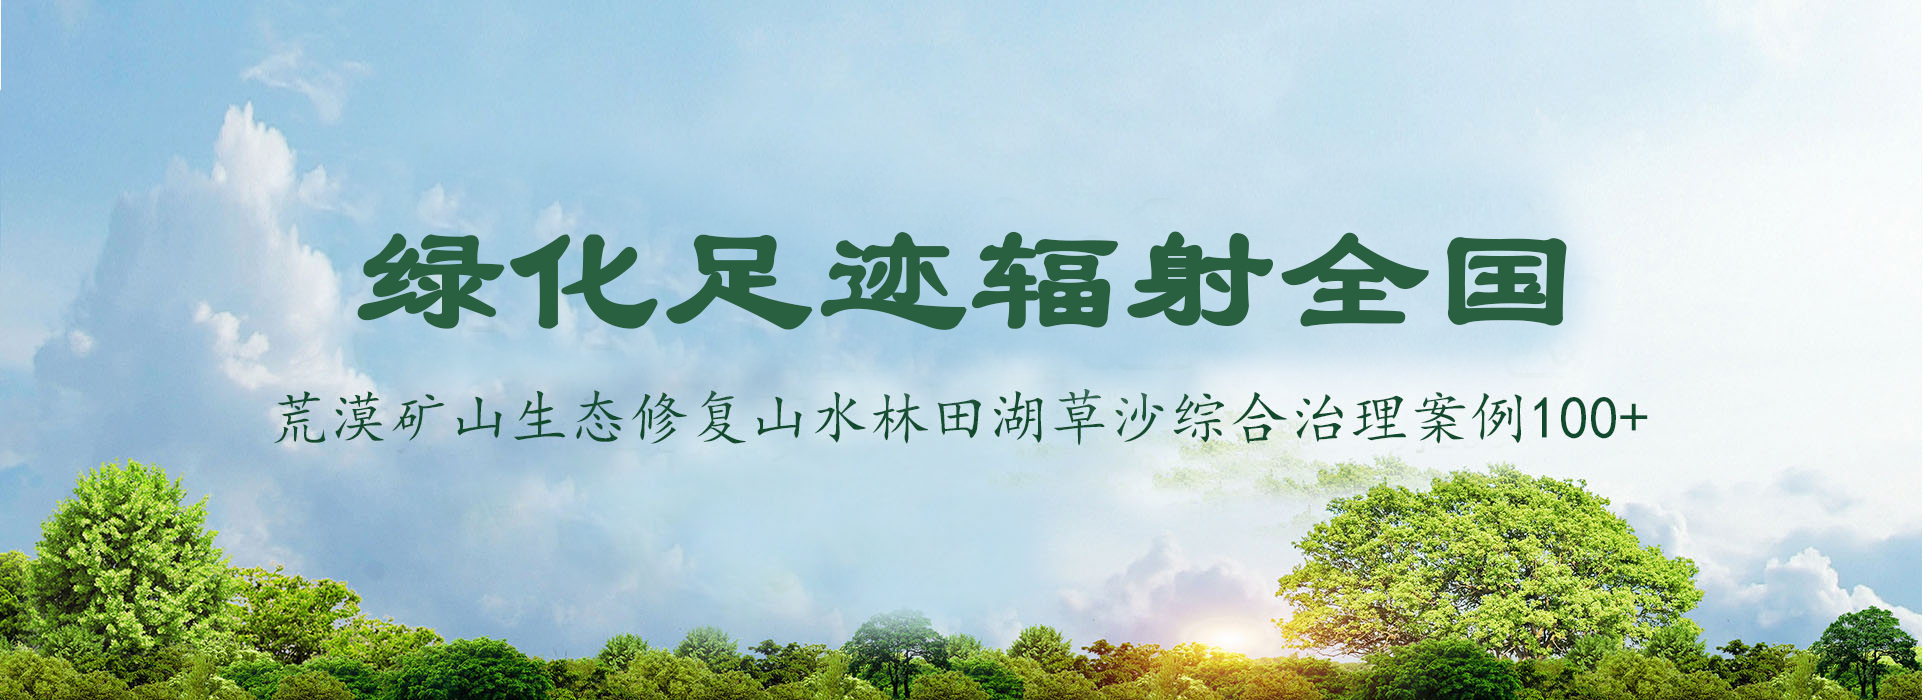 星空体育(中国)官方网站-绿化足迹辐射全国